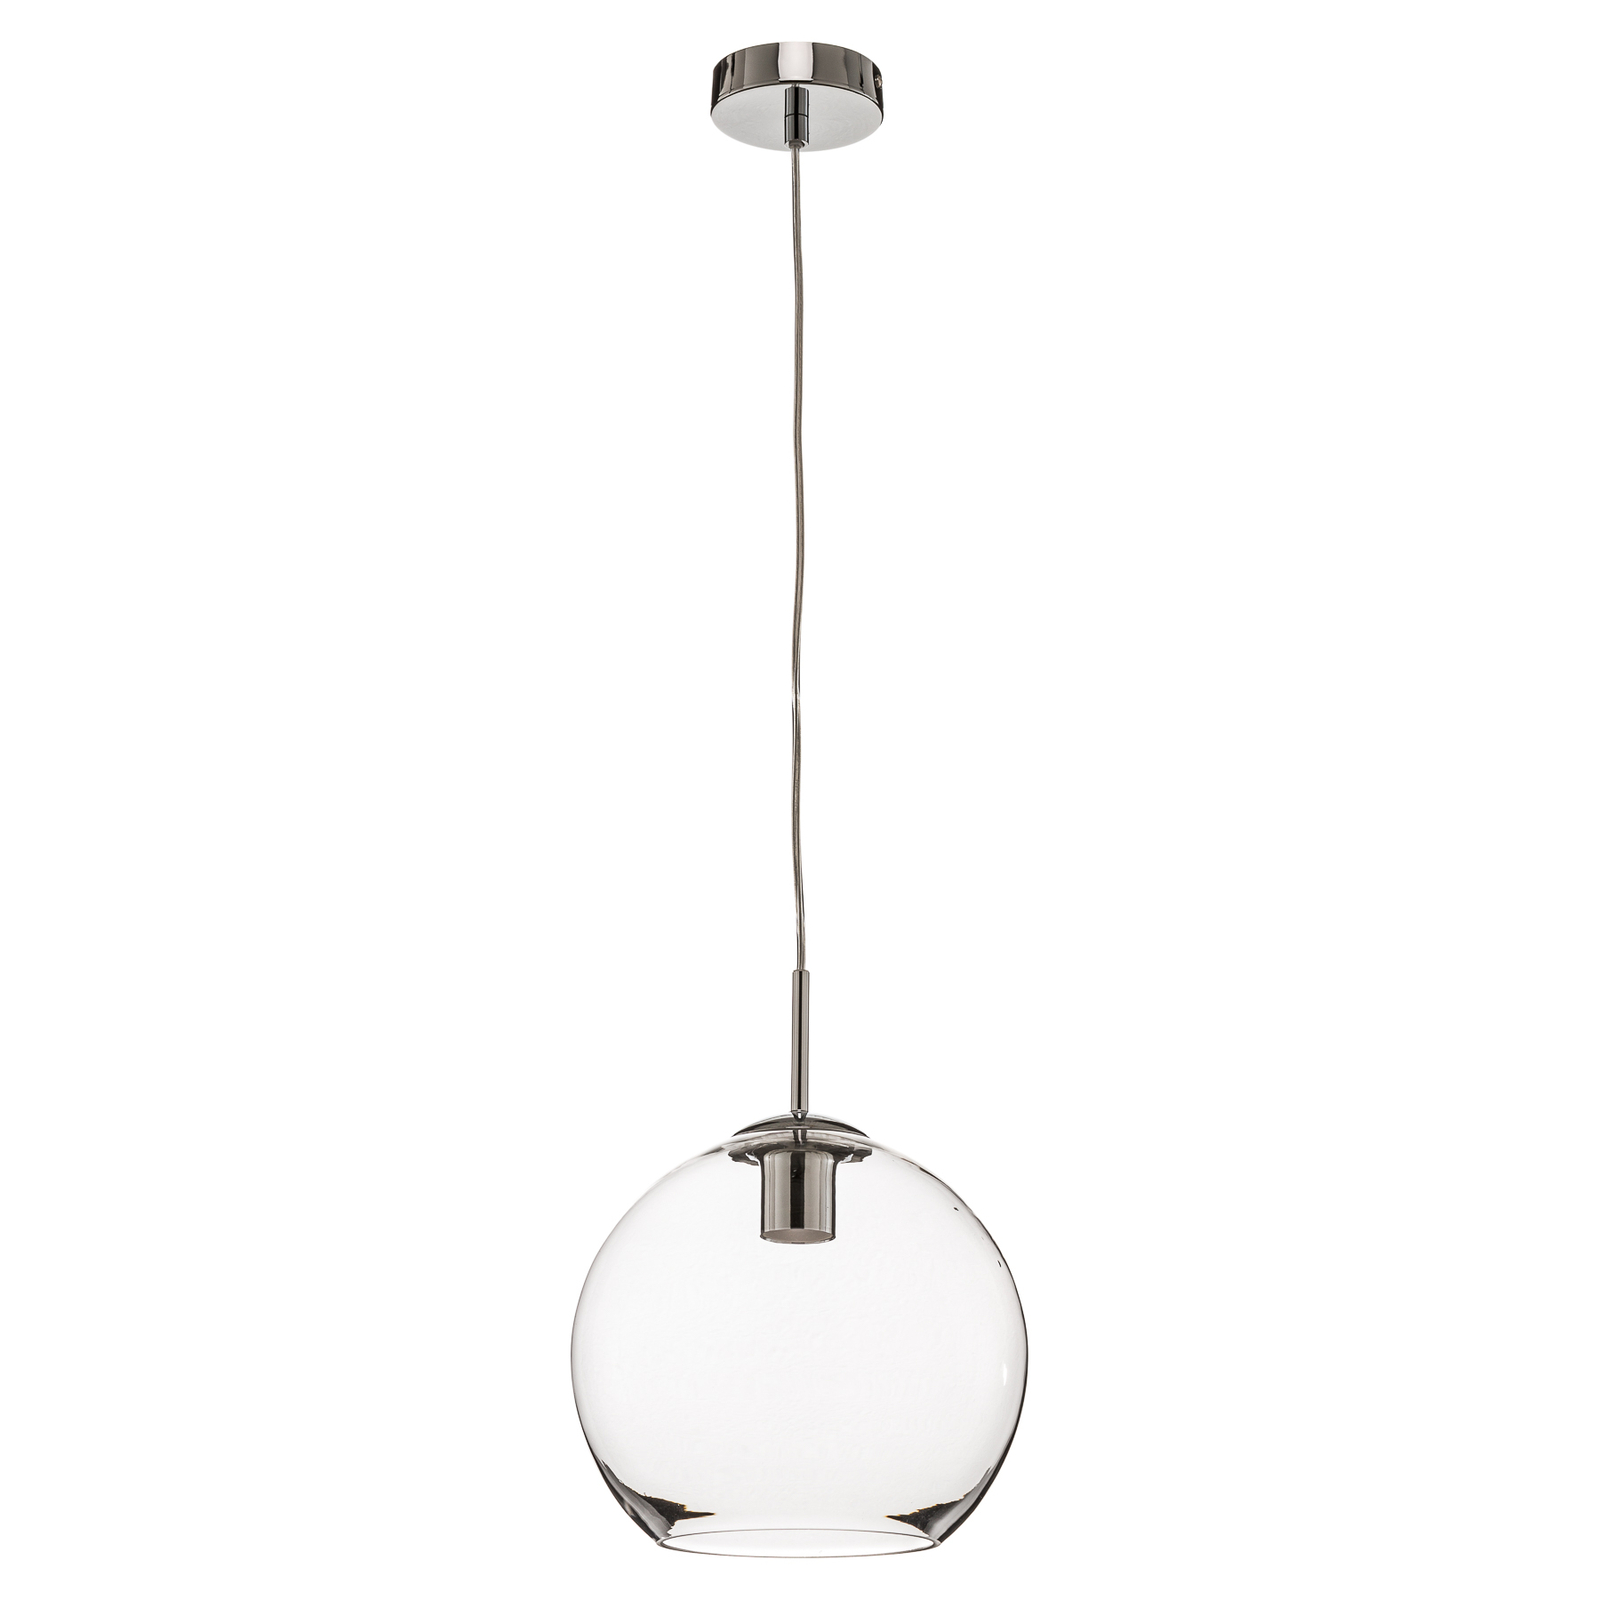 Szklana lampa wisząca Balls, 25 cm, przezroczysta